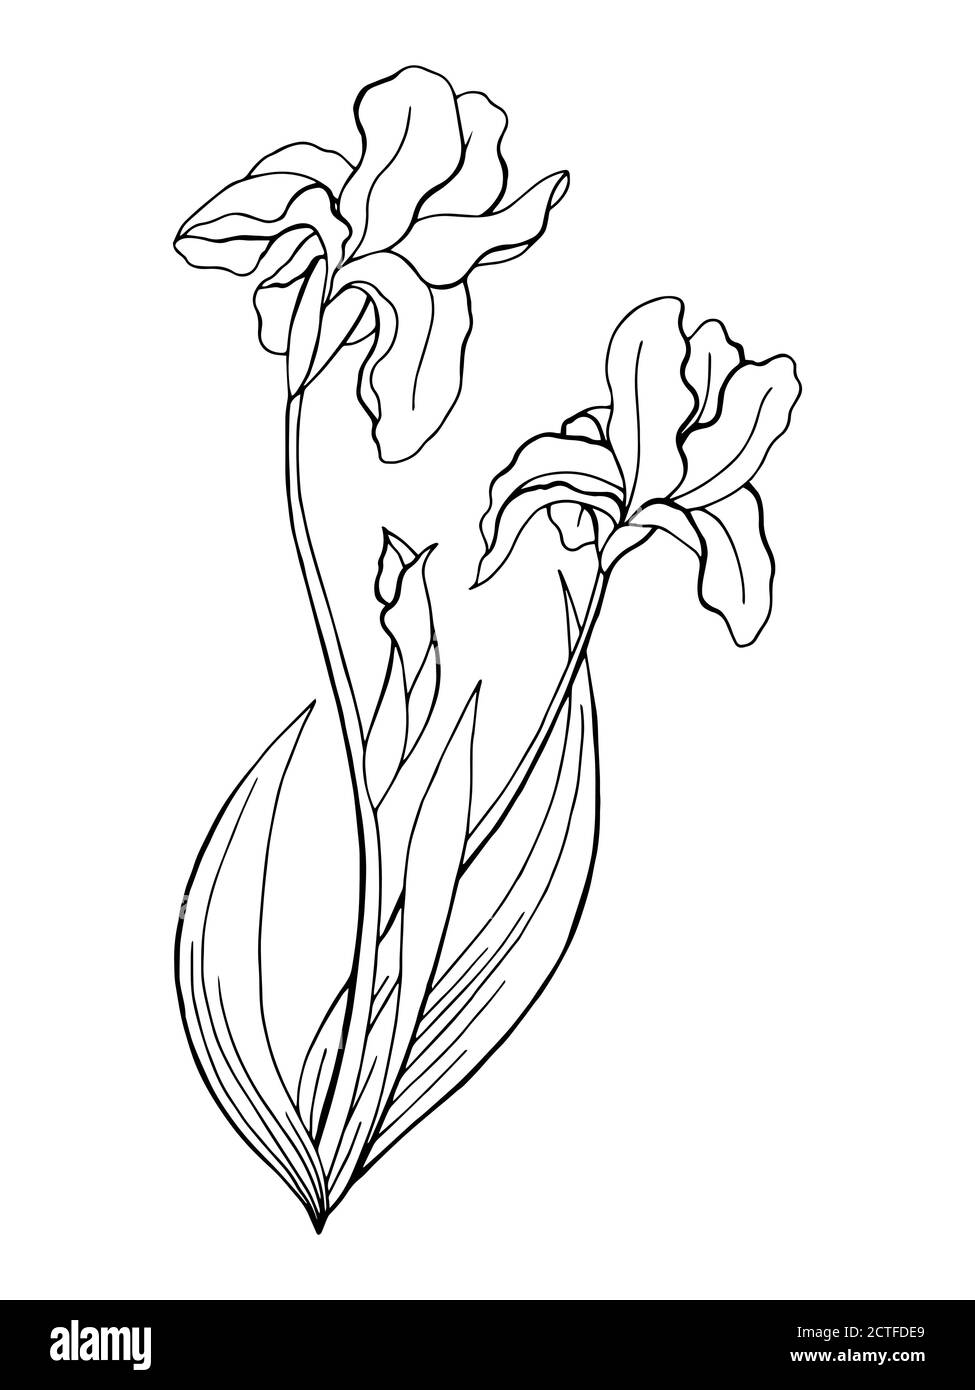 Iris flower graphic art black white isolated illustration vector Stock Vector